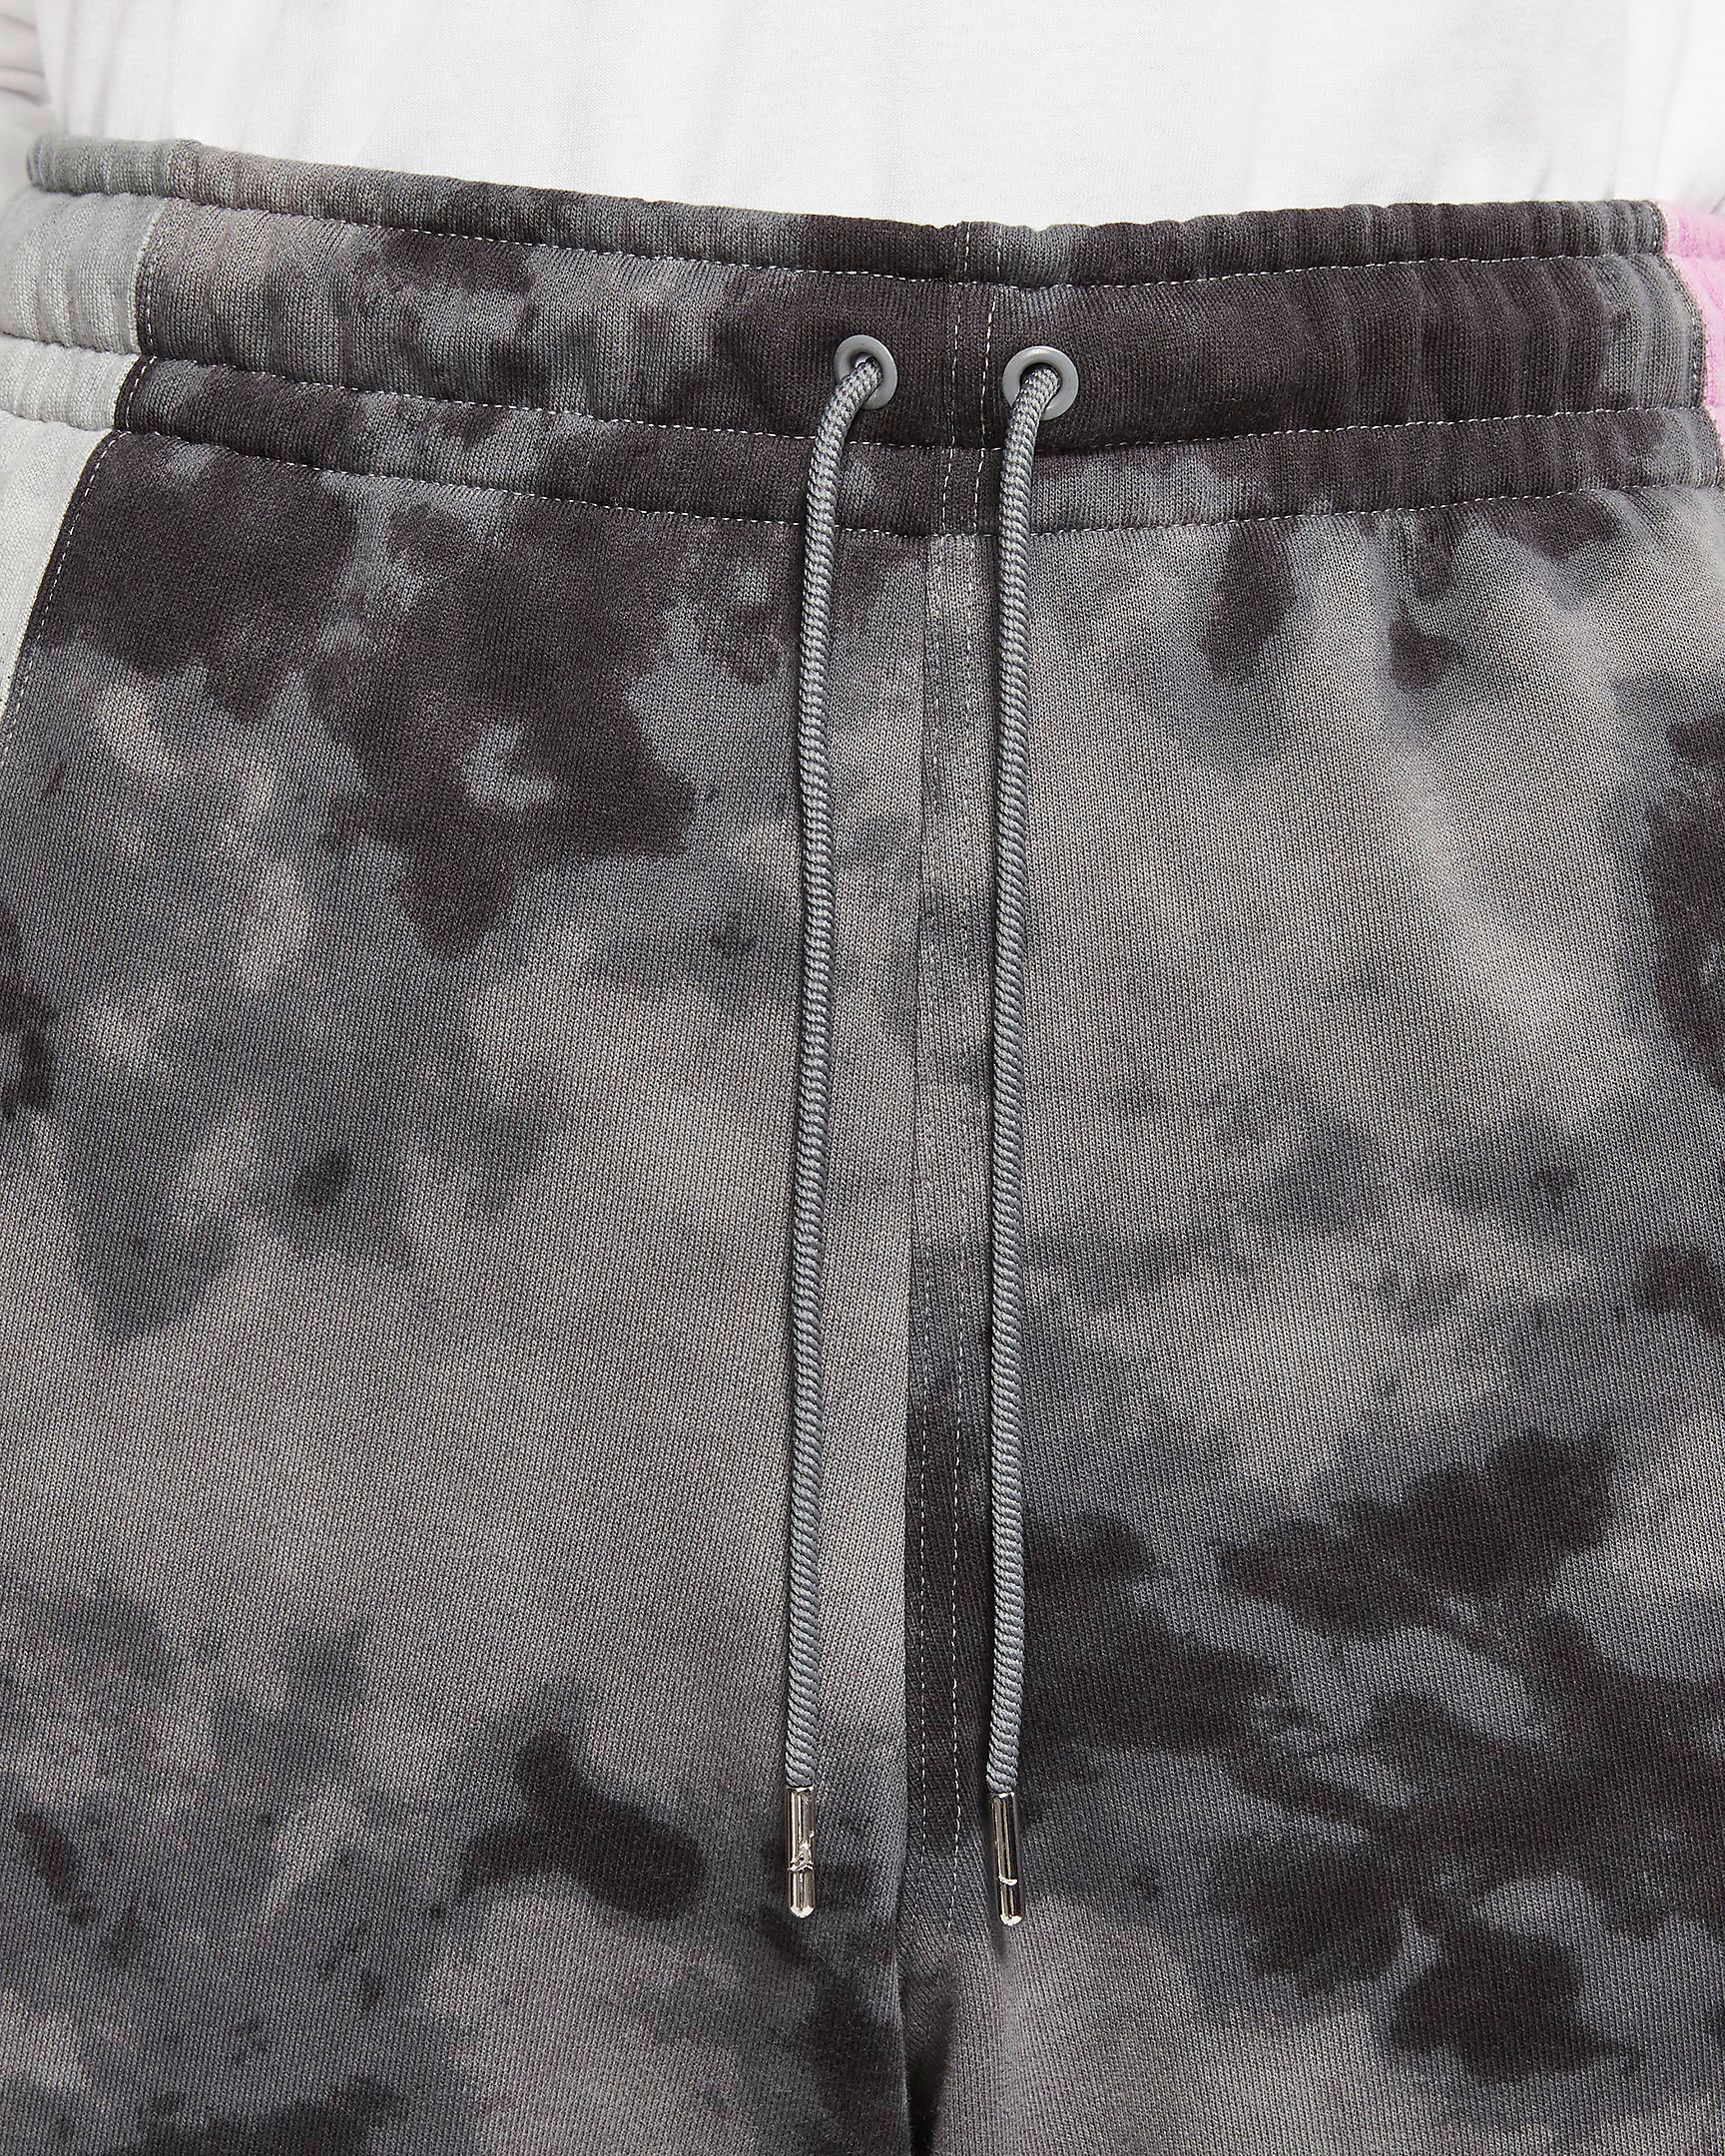 jordn-sport-dna-vintage-shorts-black-grey-purple-6